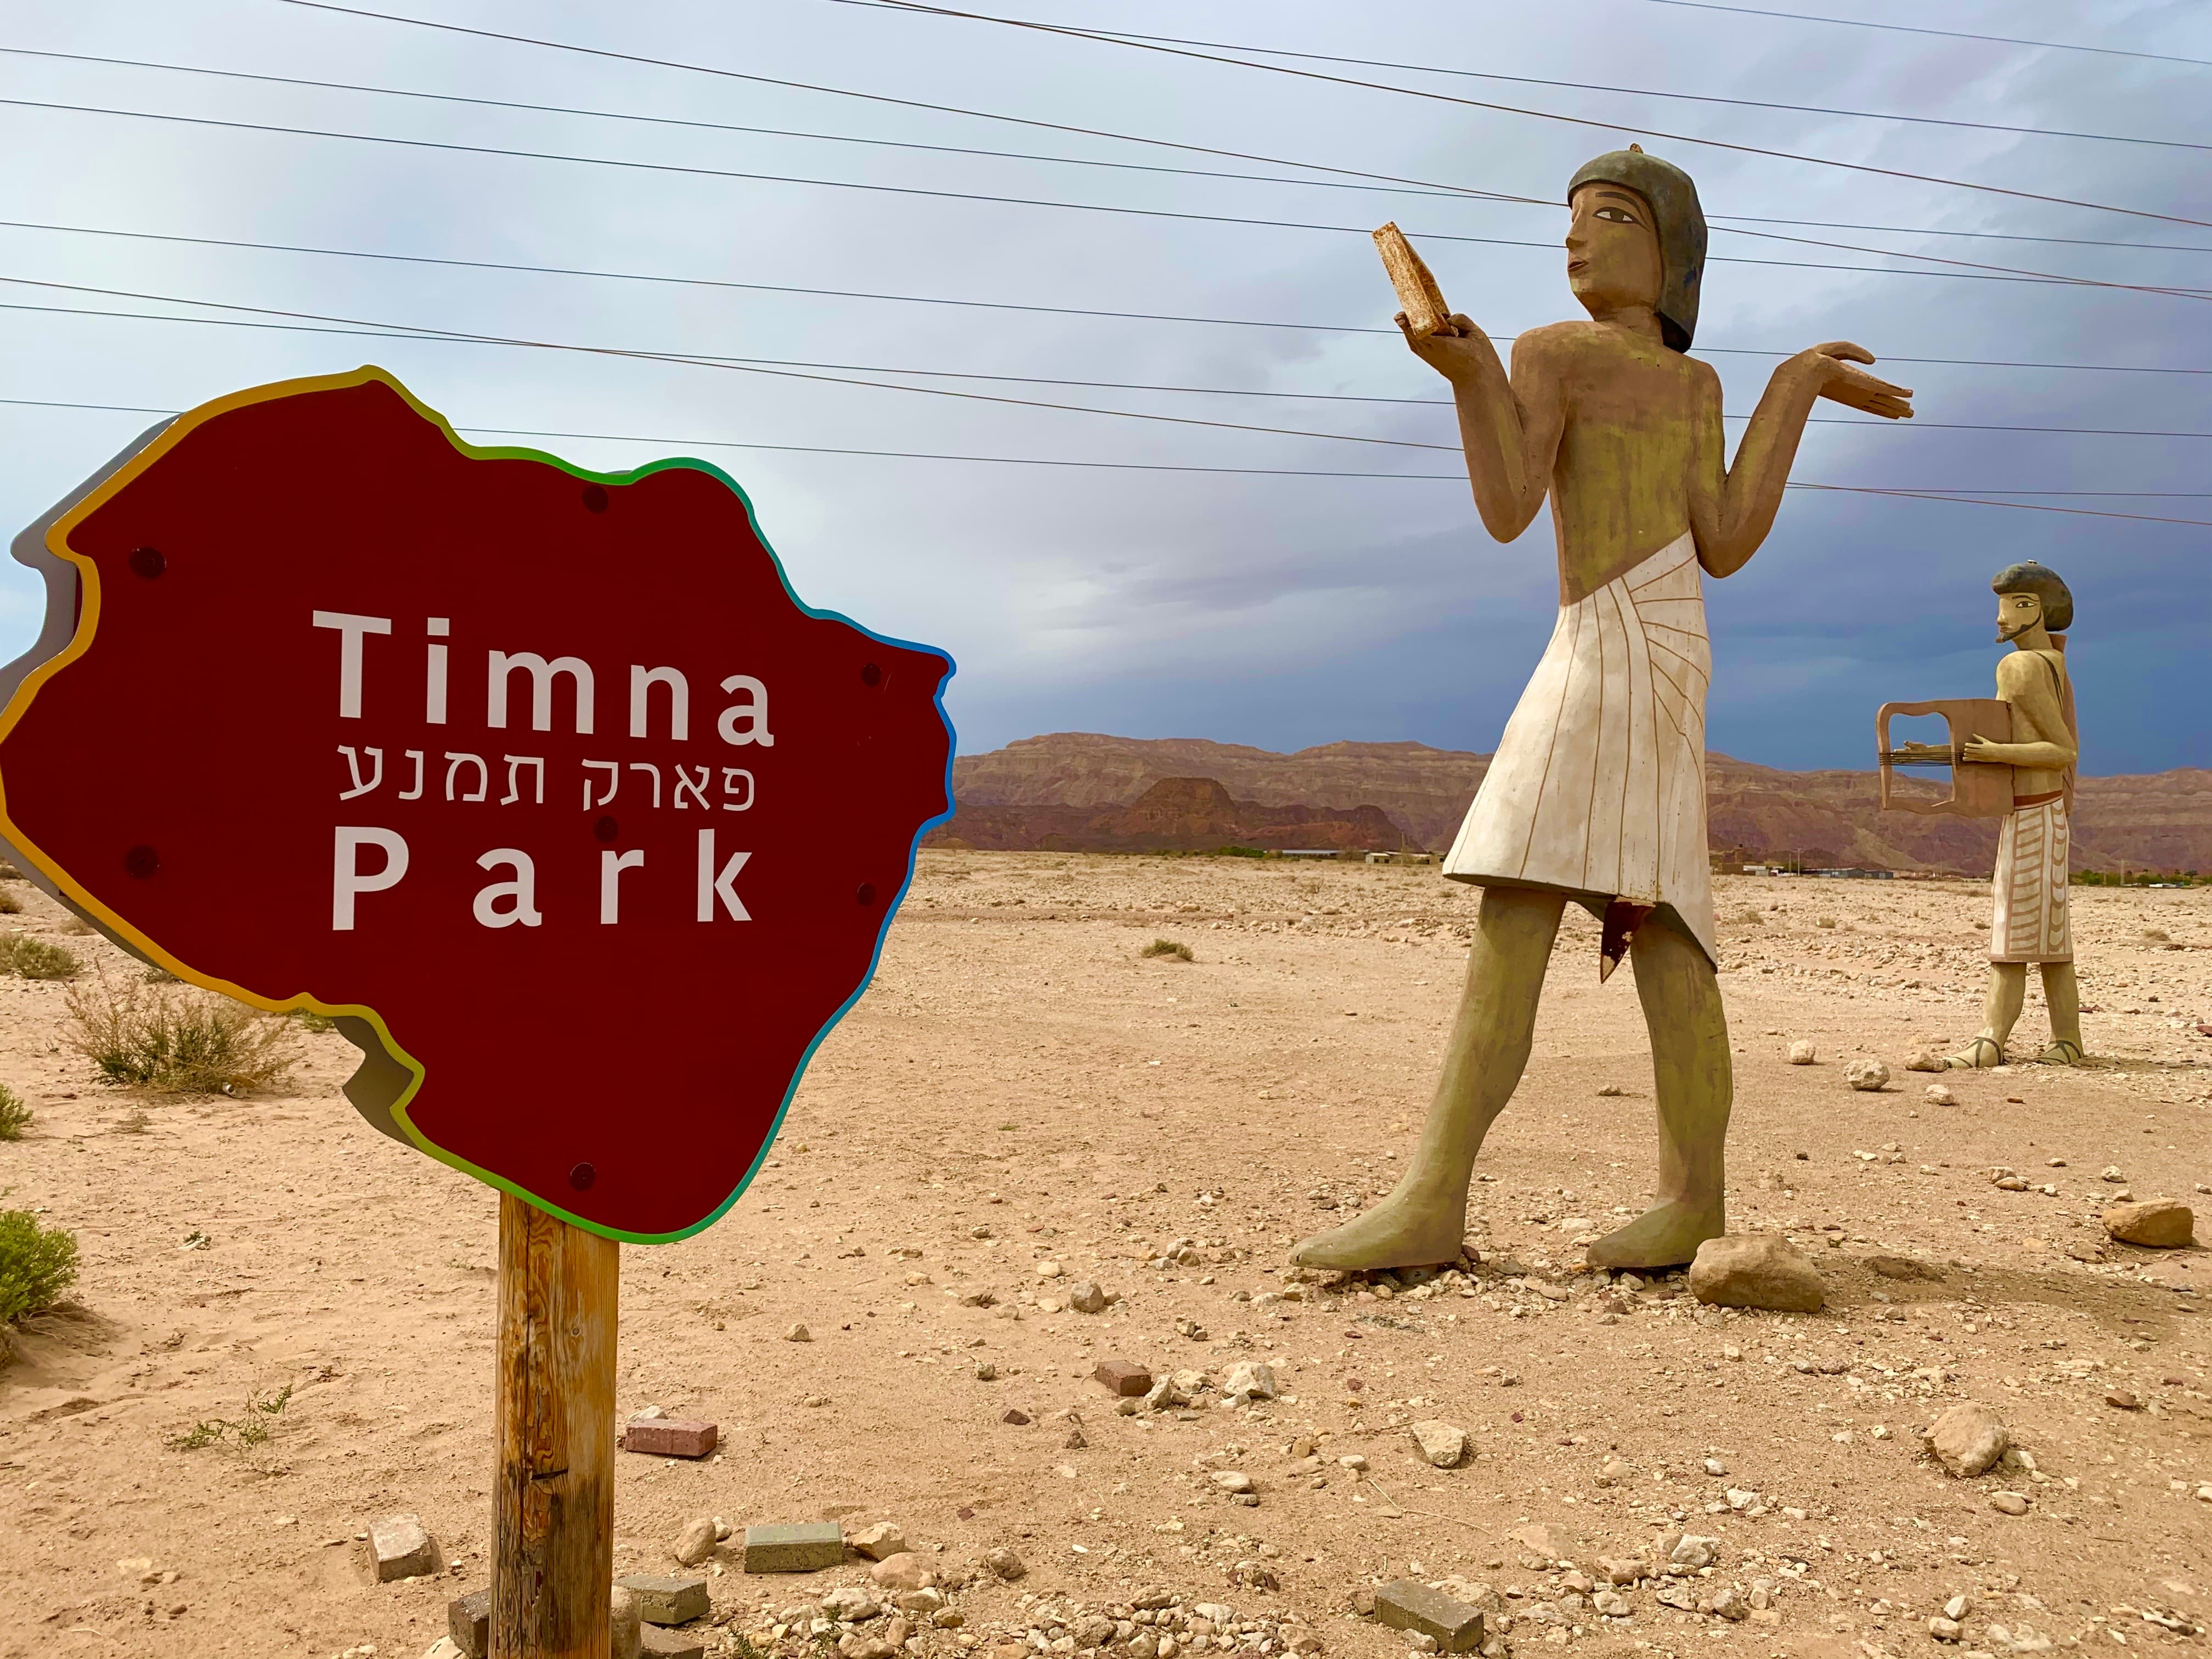 "Vítejte v údolí Timna"